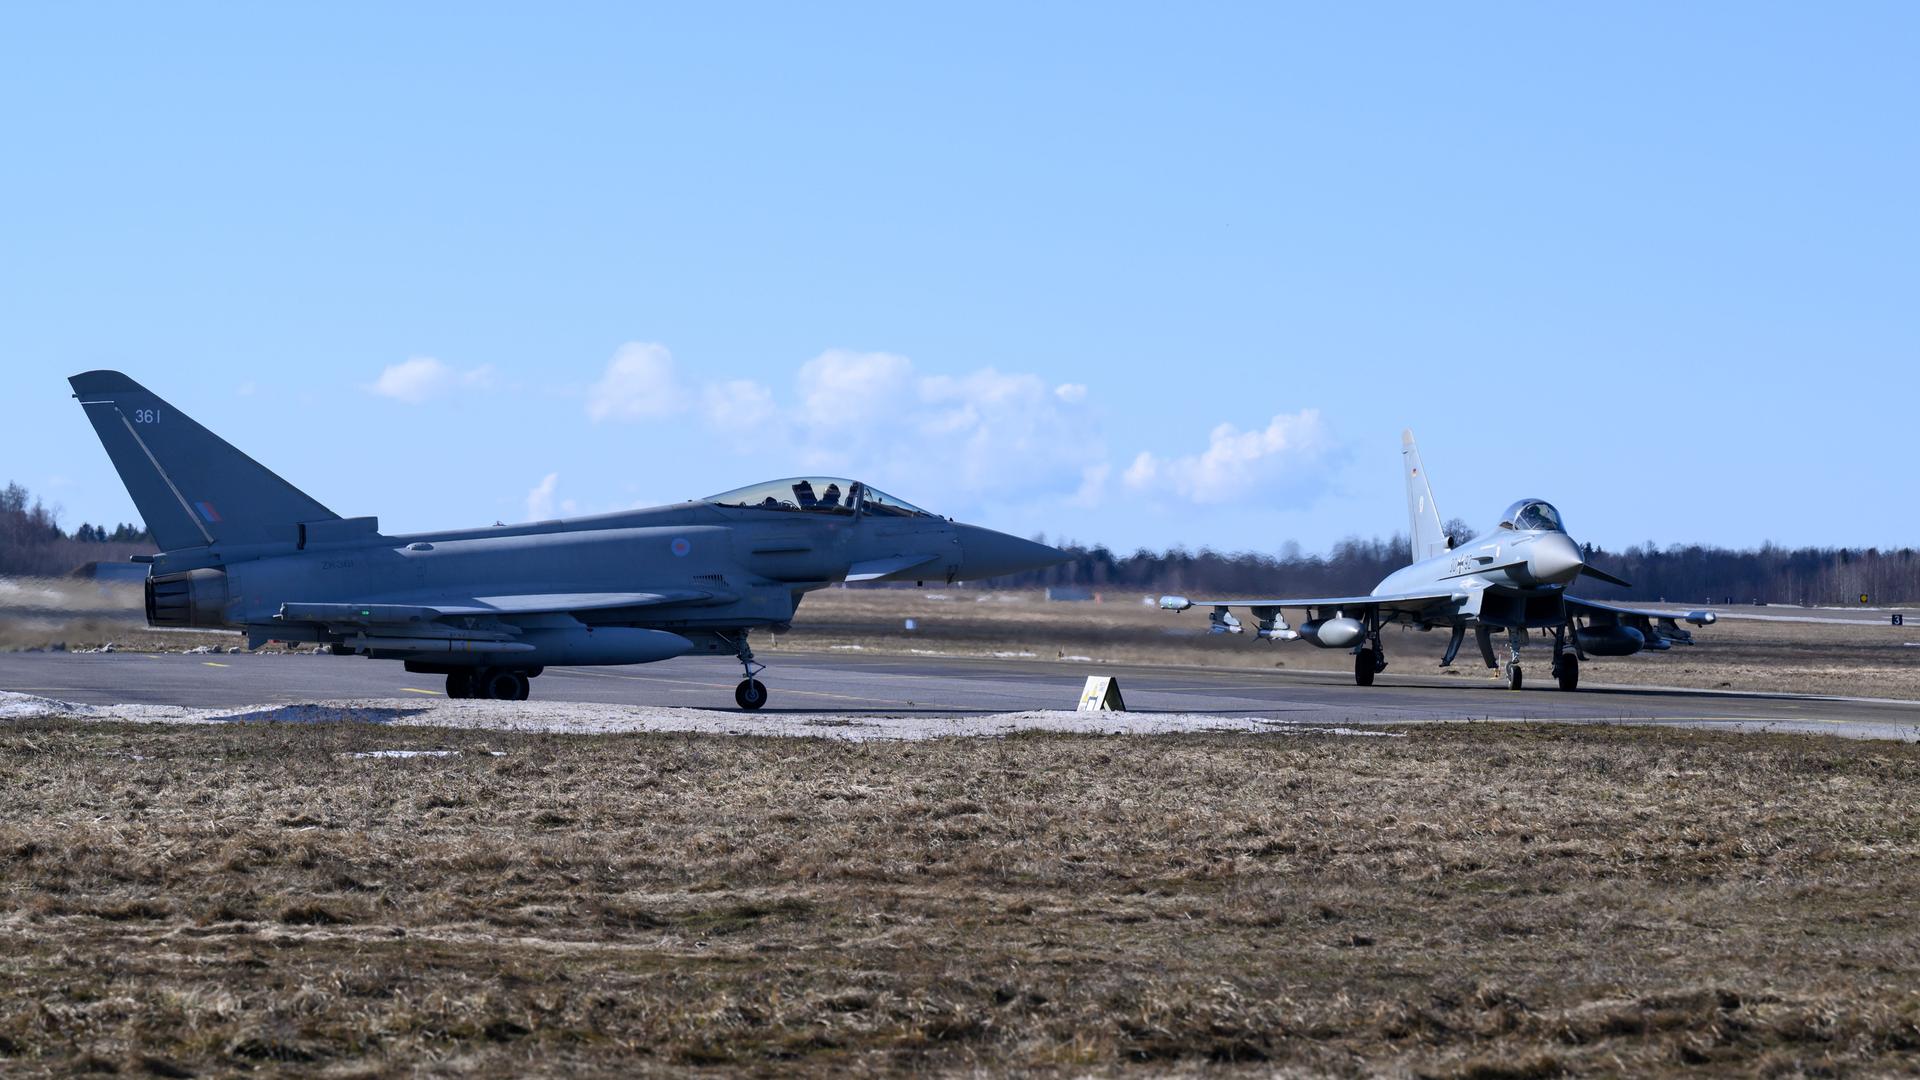 Zwei hellgrau lackierte Kampfjets stehen unter blauem Himmel auf einem Rollfeld.